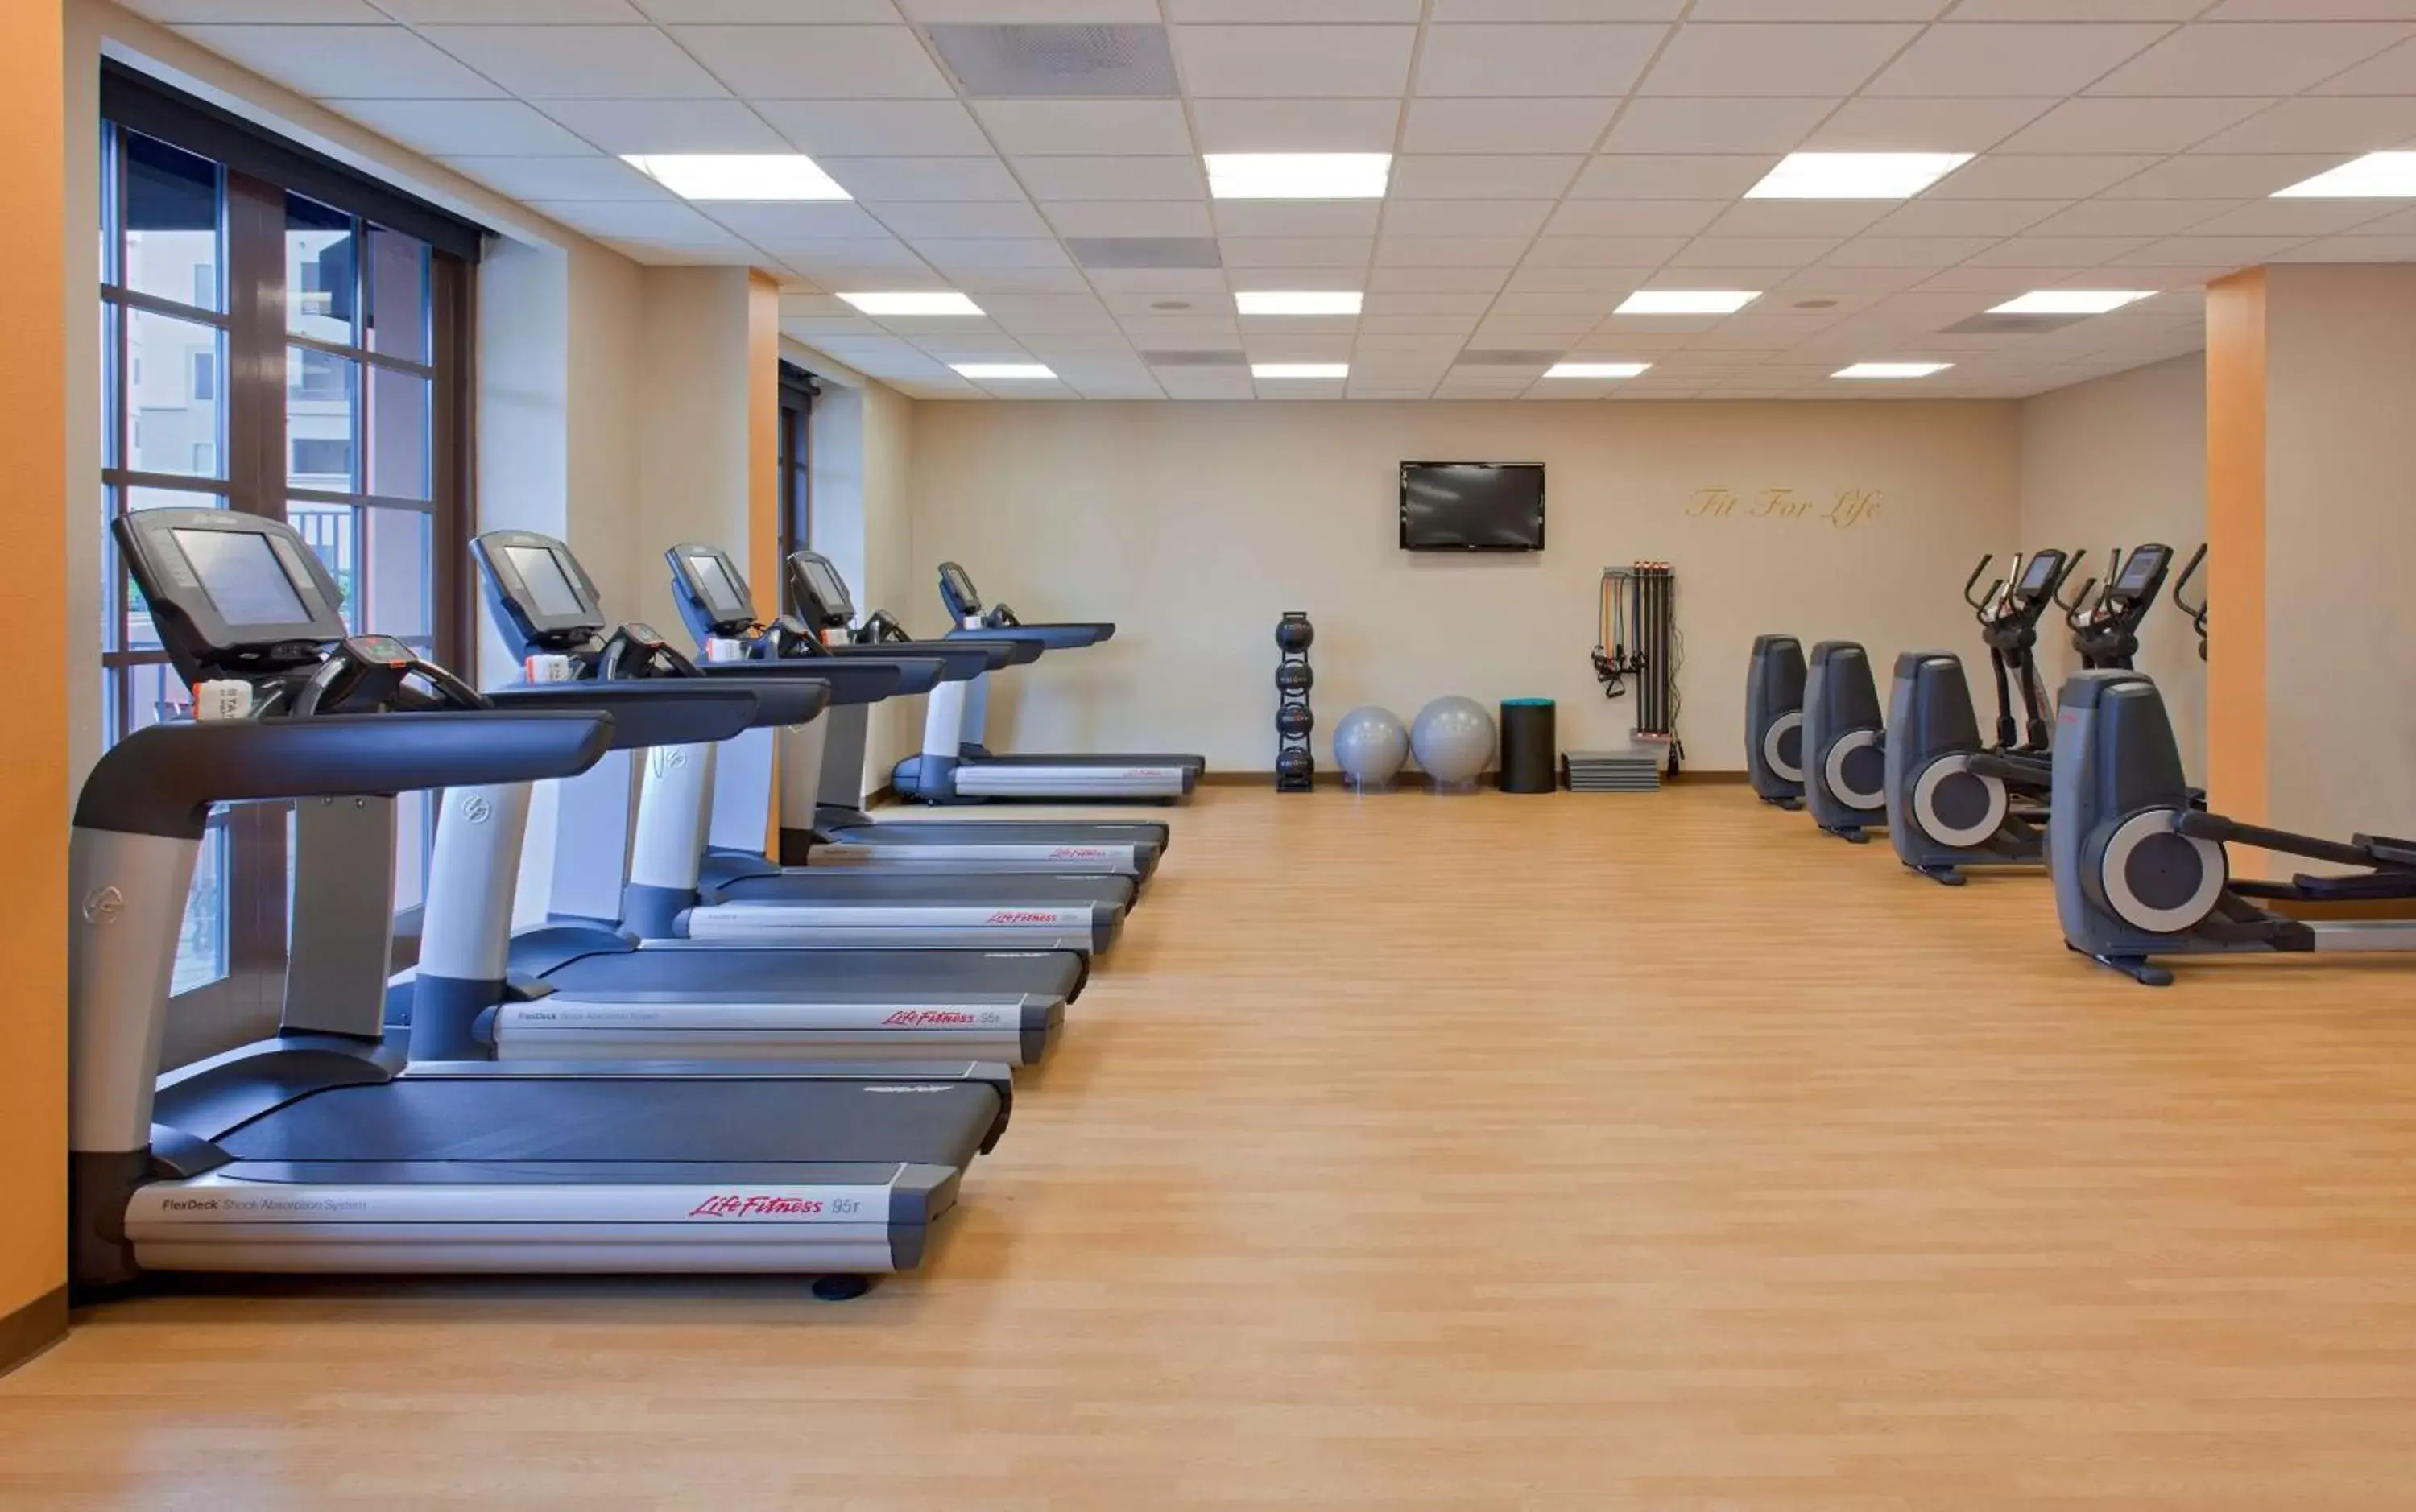 Fitness centre/facilities, Fitness Center/Facilities in Hyatt Regency La Jolla at Aventine